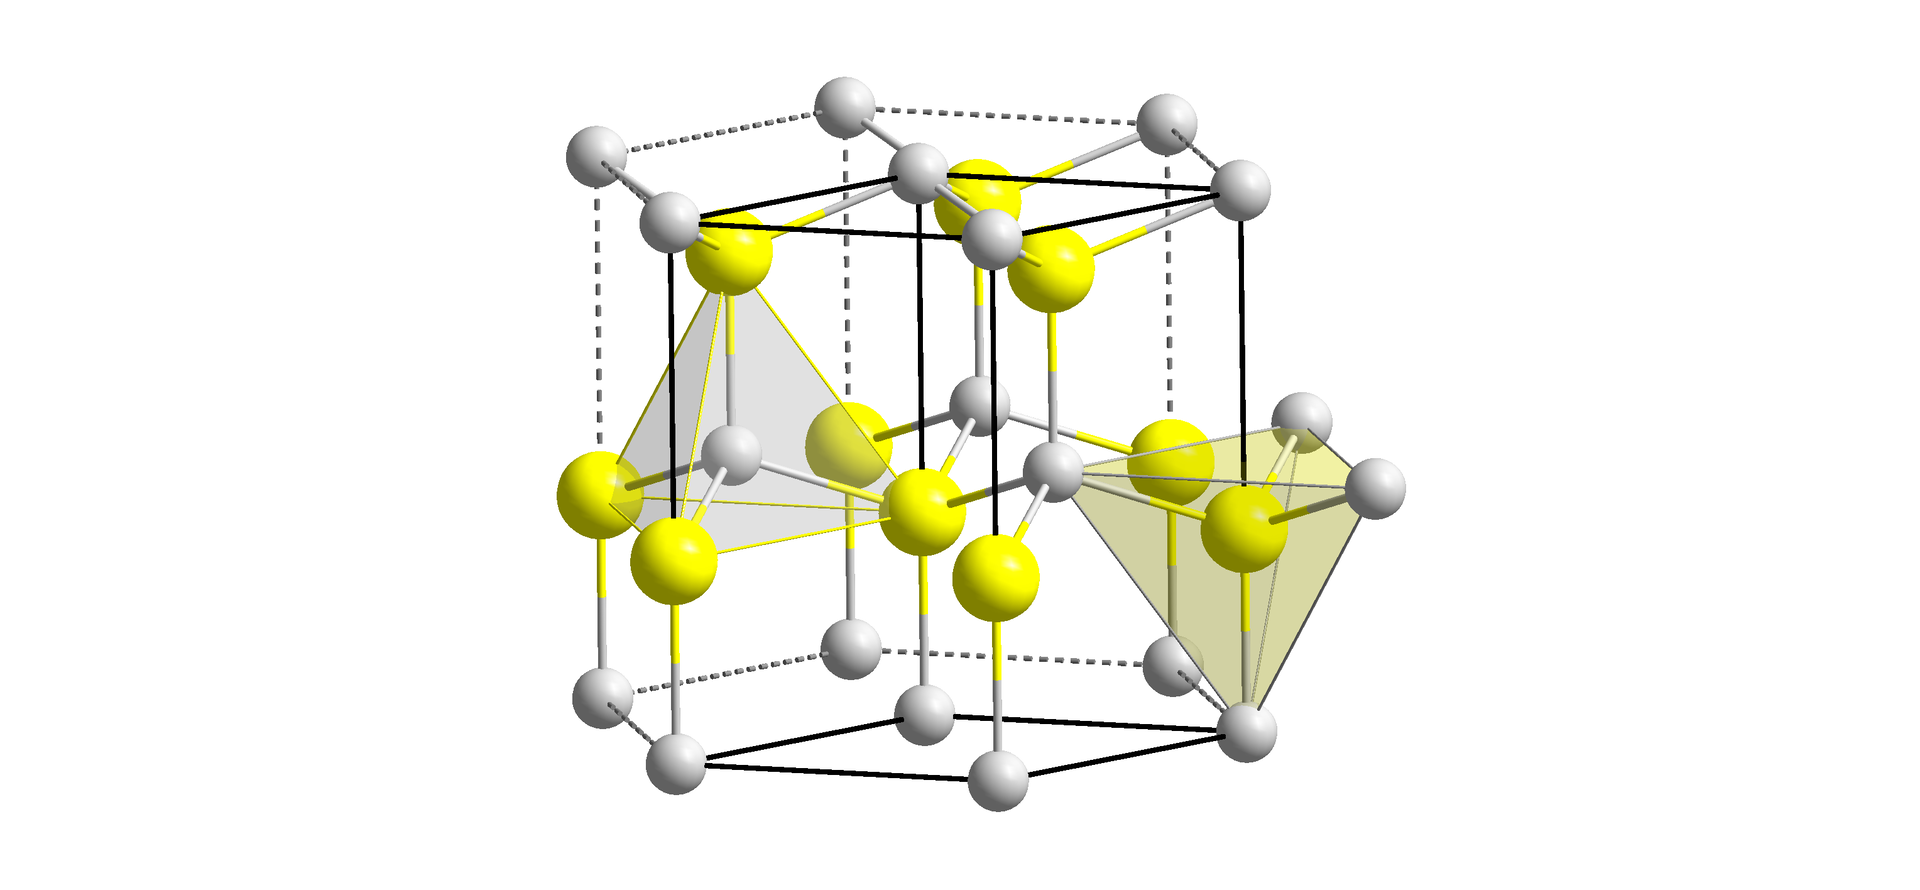 Ilustracja przedstawia strukturę wodorku miedzi(&lt;math aria‑label="jeden"&gt;I). Wodór przedstawiono jako białe kulki, a miedź jako żółte kulki. Strukturę przedstawiono na graniastosłupie o podstawie sześciokąta. Sześciokąt tworzy sześć atomów wodoru i jeden w centrum. Do każdego atomu miedzi przyłączone są cztery atomy wodoru, a takie pięcioatomowe ugrupowanie tworzy tetraedr, w którym atom miedzi znajduje się wewnątrz bryły.